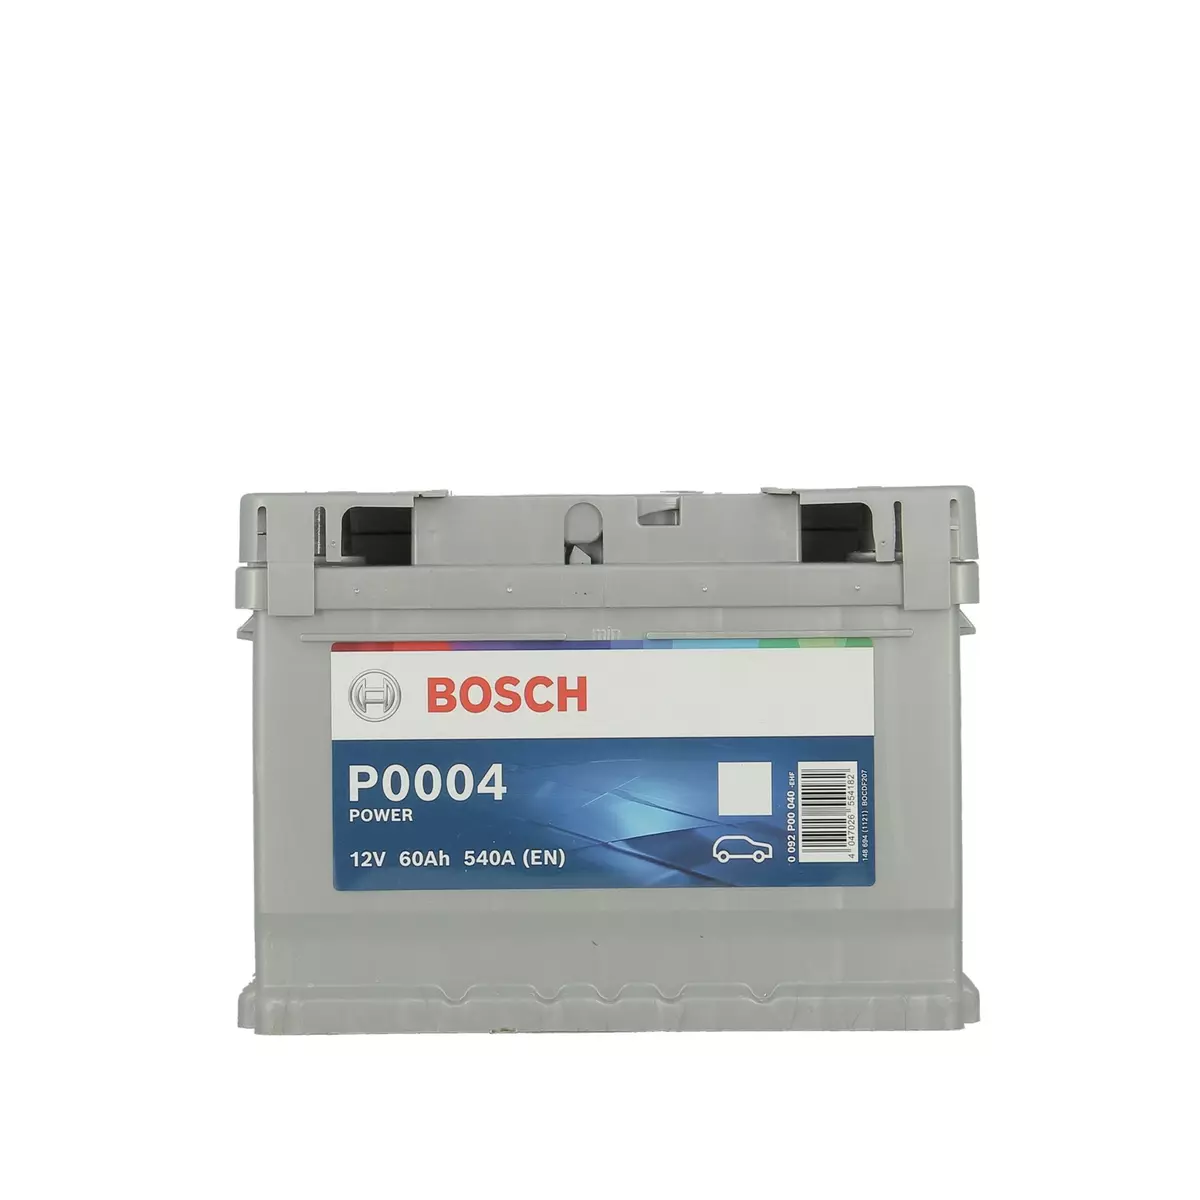 BOSCH Batterie 60Ah 540A P0004